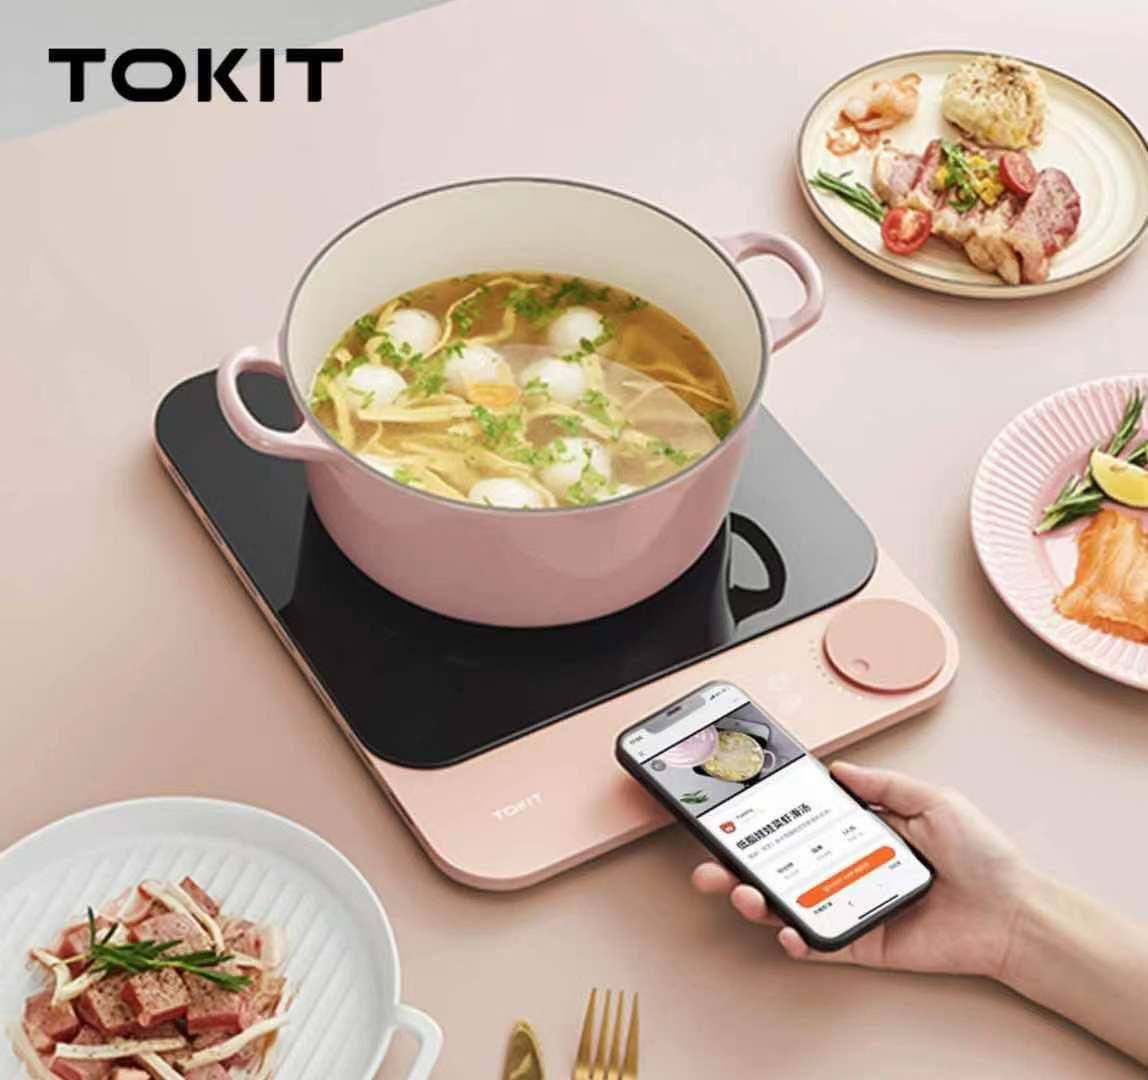 جهاز طبخ من شاومي Xiaomi TOKIT Induction Cooker - cG9zdDo1MzI3NjI=